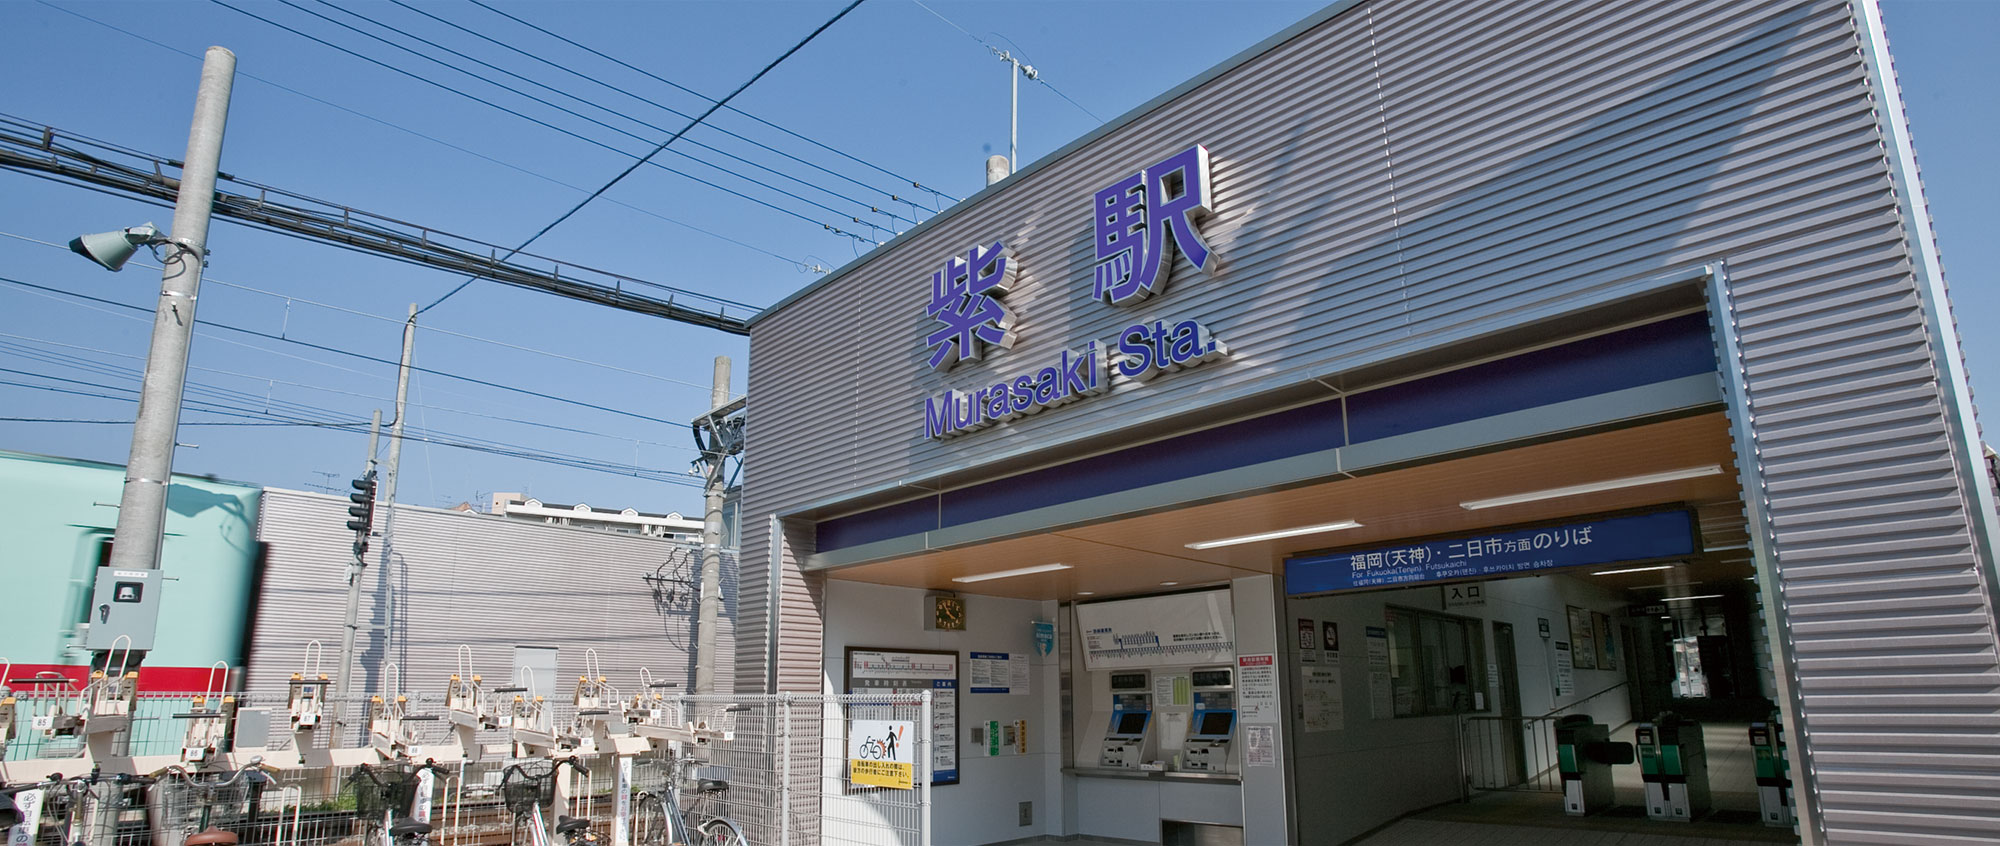 紫駅の写真